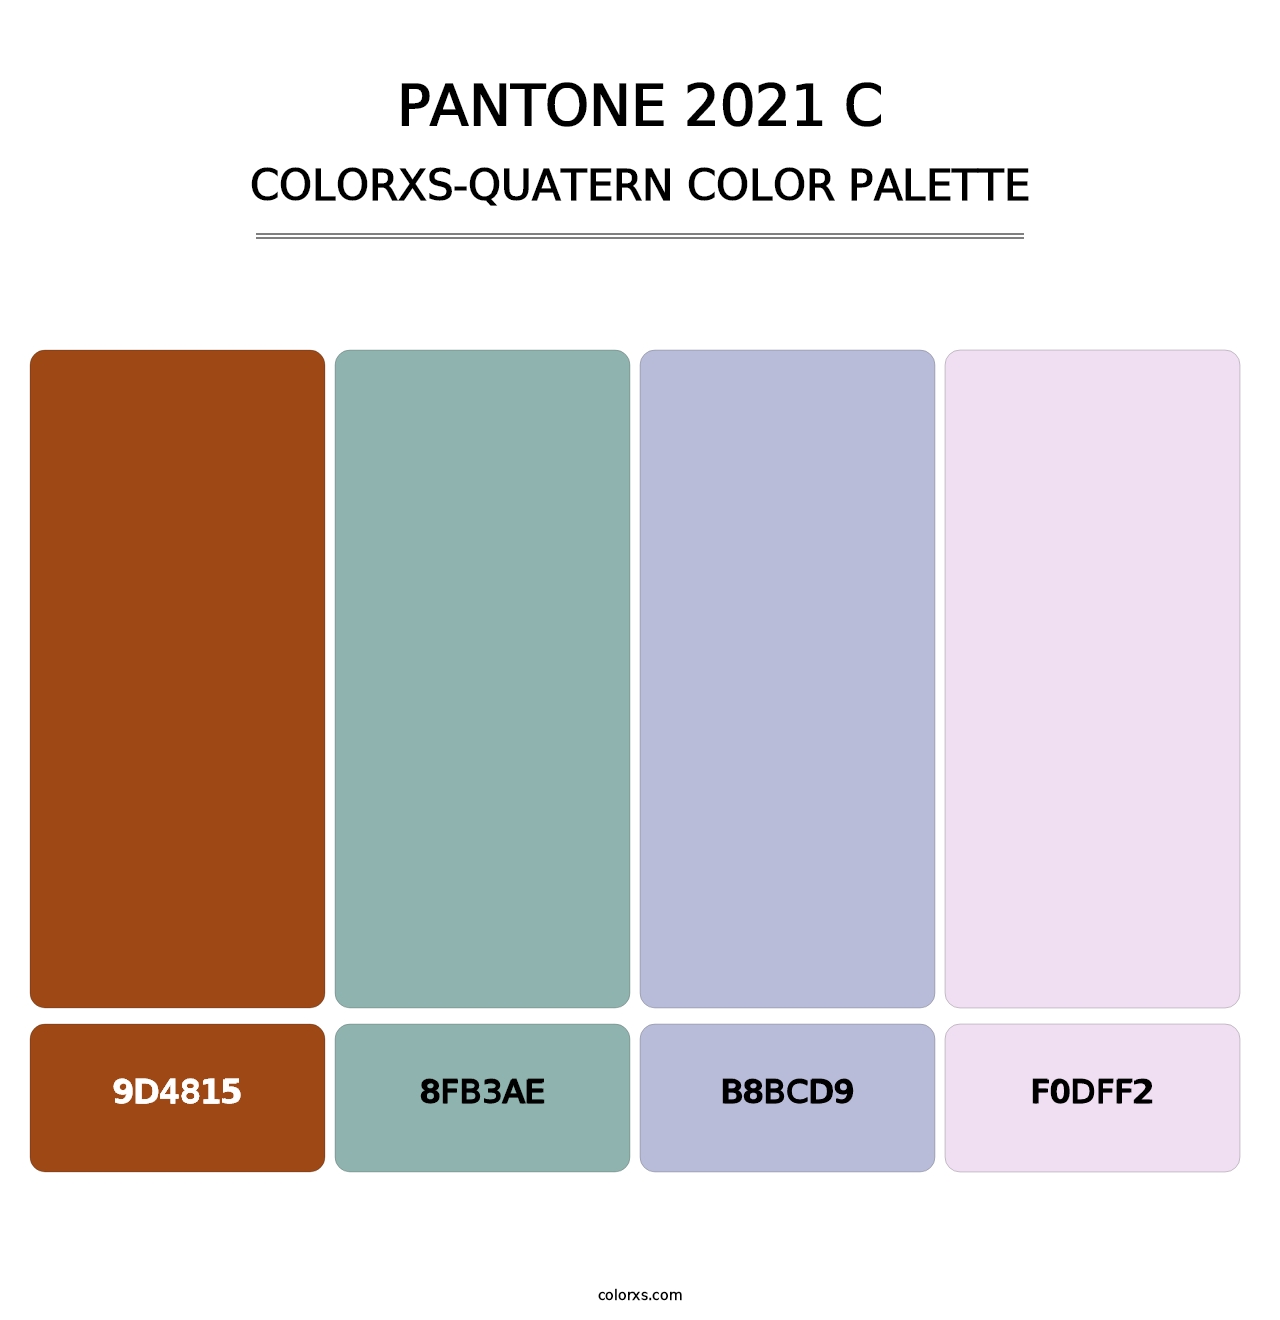 PANTONE 2021 C - Colorxs Quatern Palette